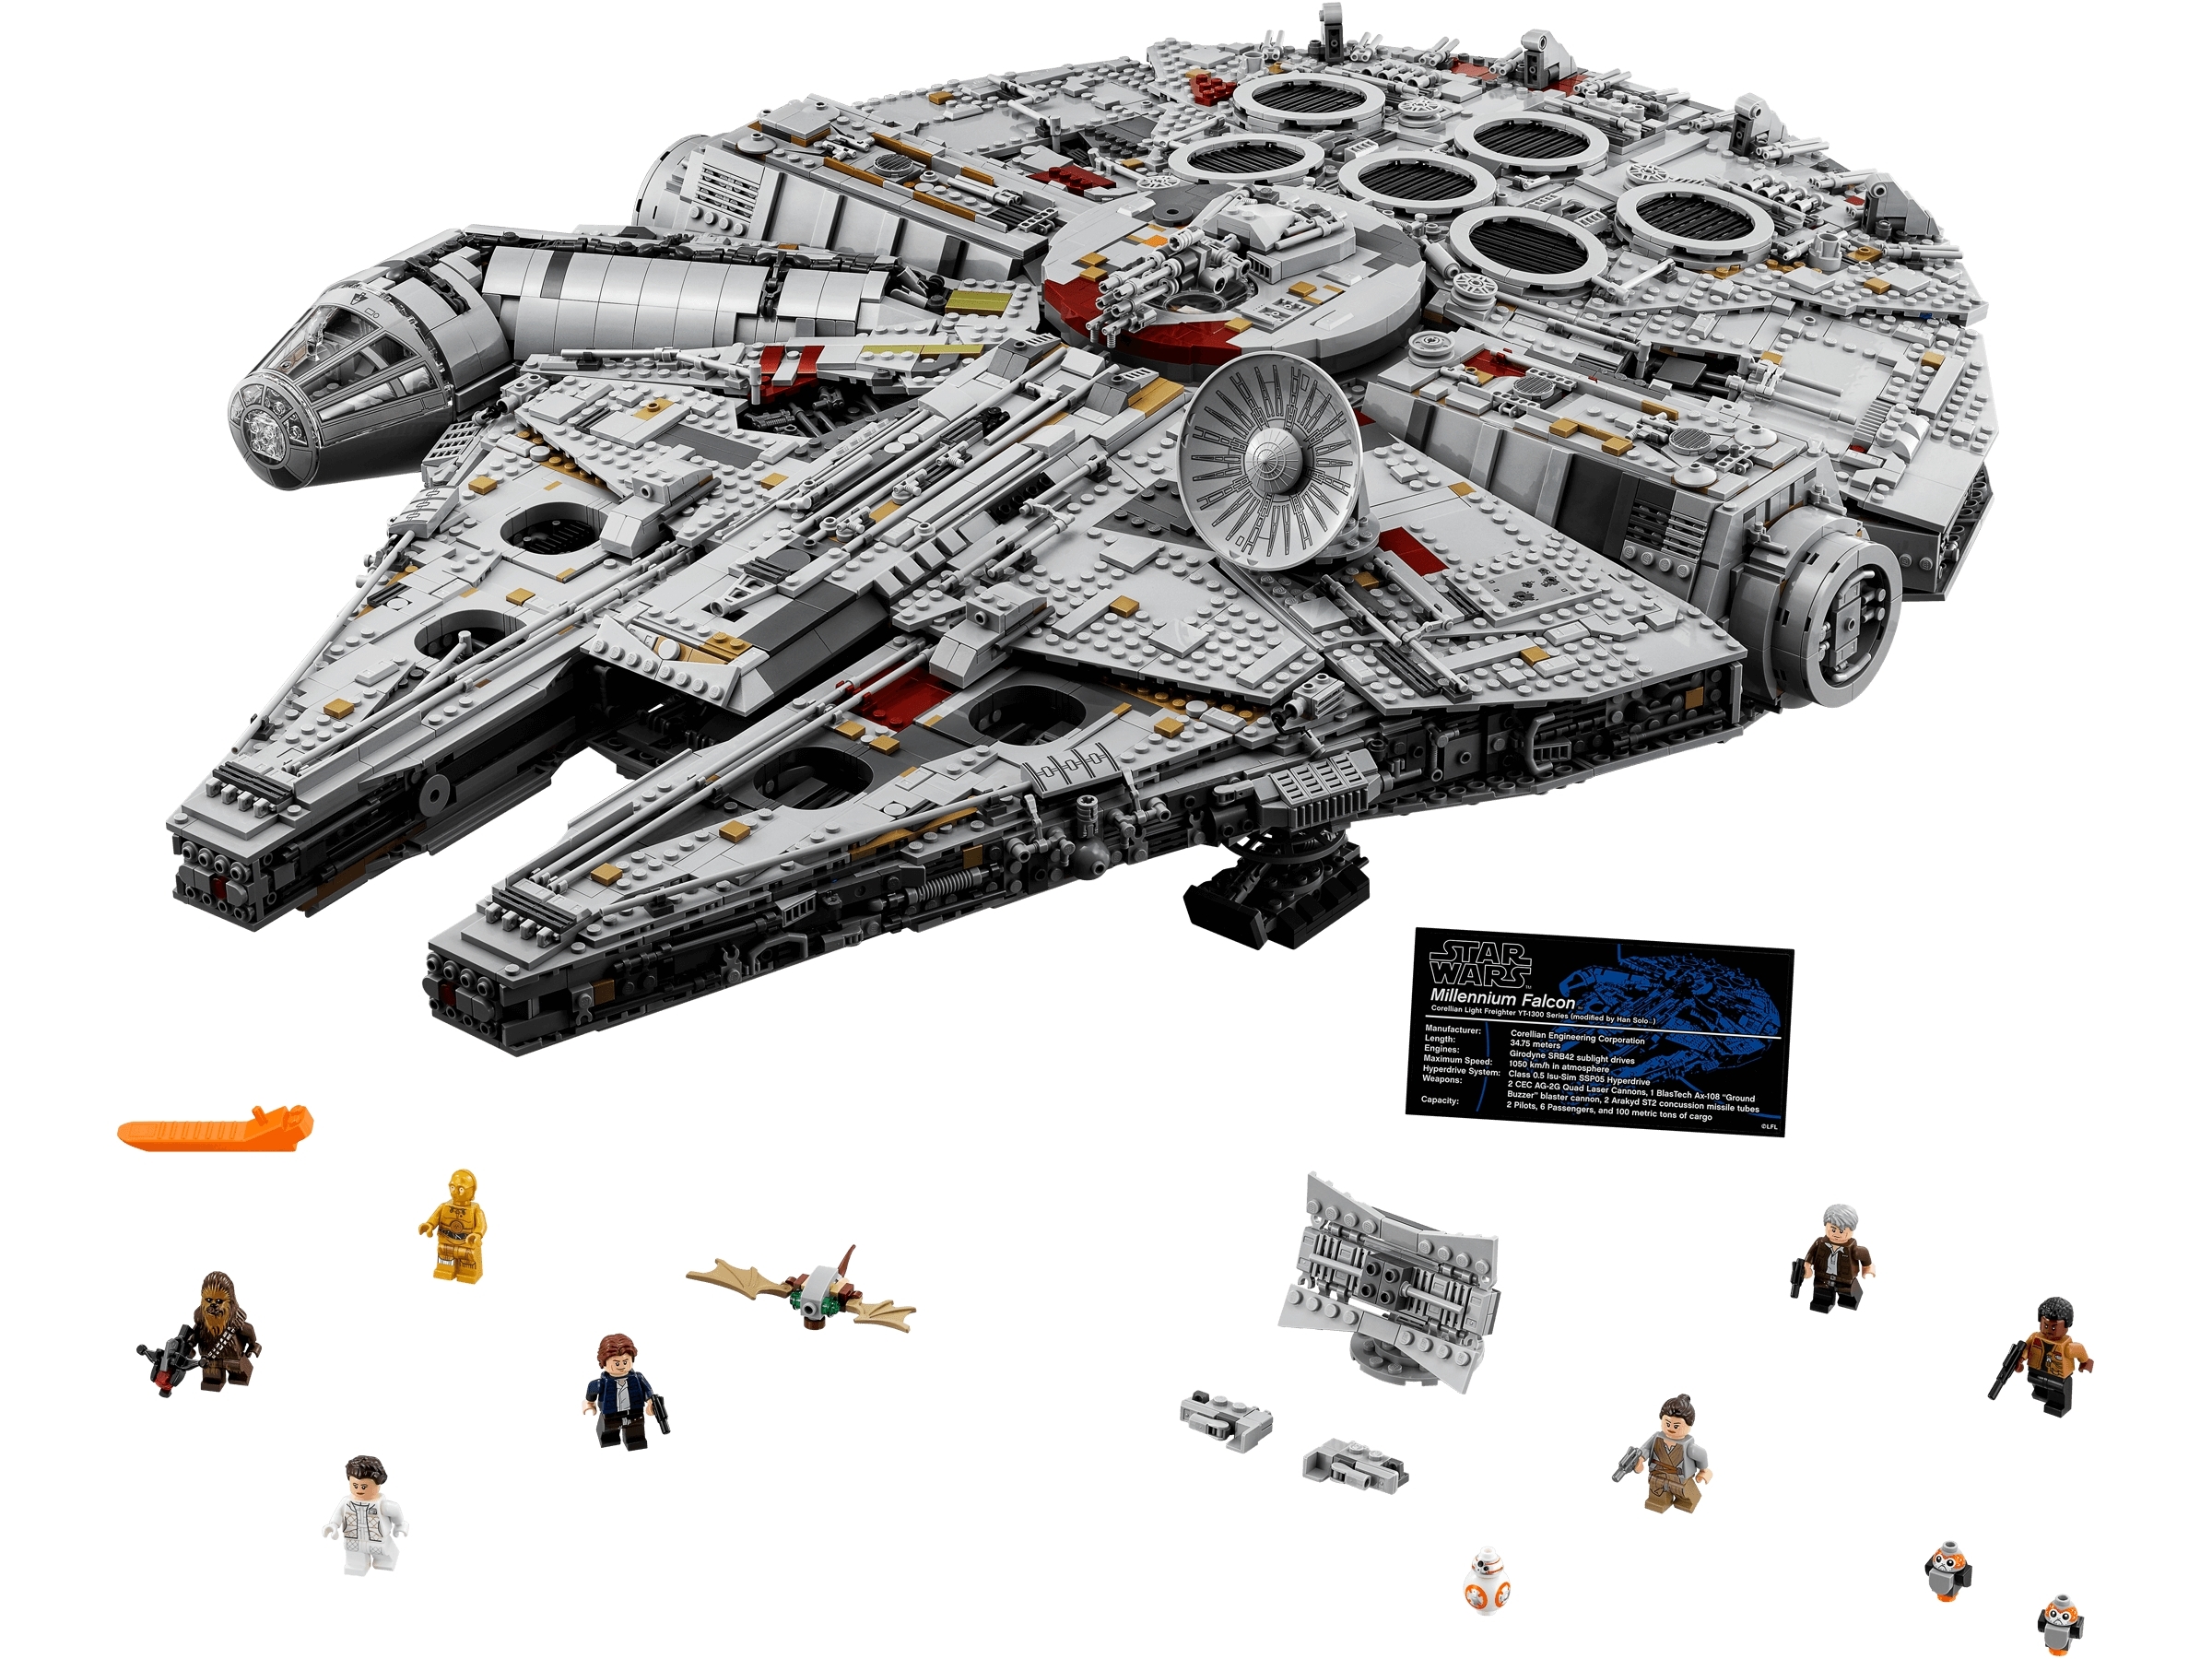 Star Wars Lego 75192 UCS Millennium Falcon A4 tri-fold glossy brochure NEW 2017 